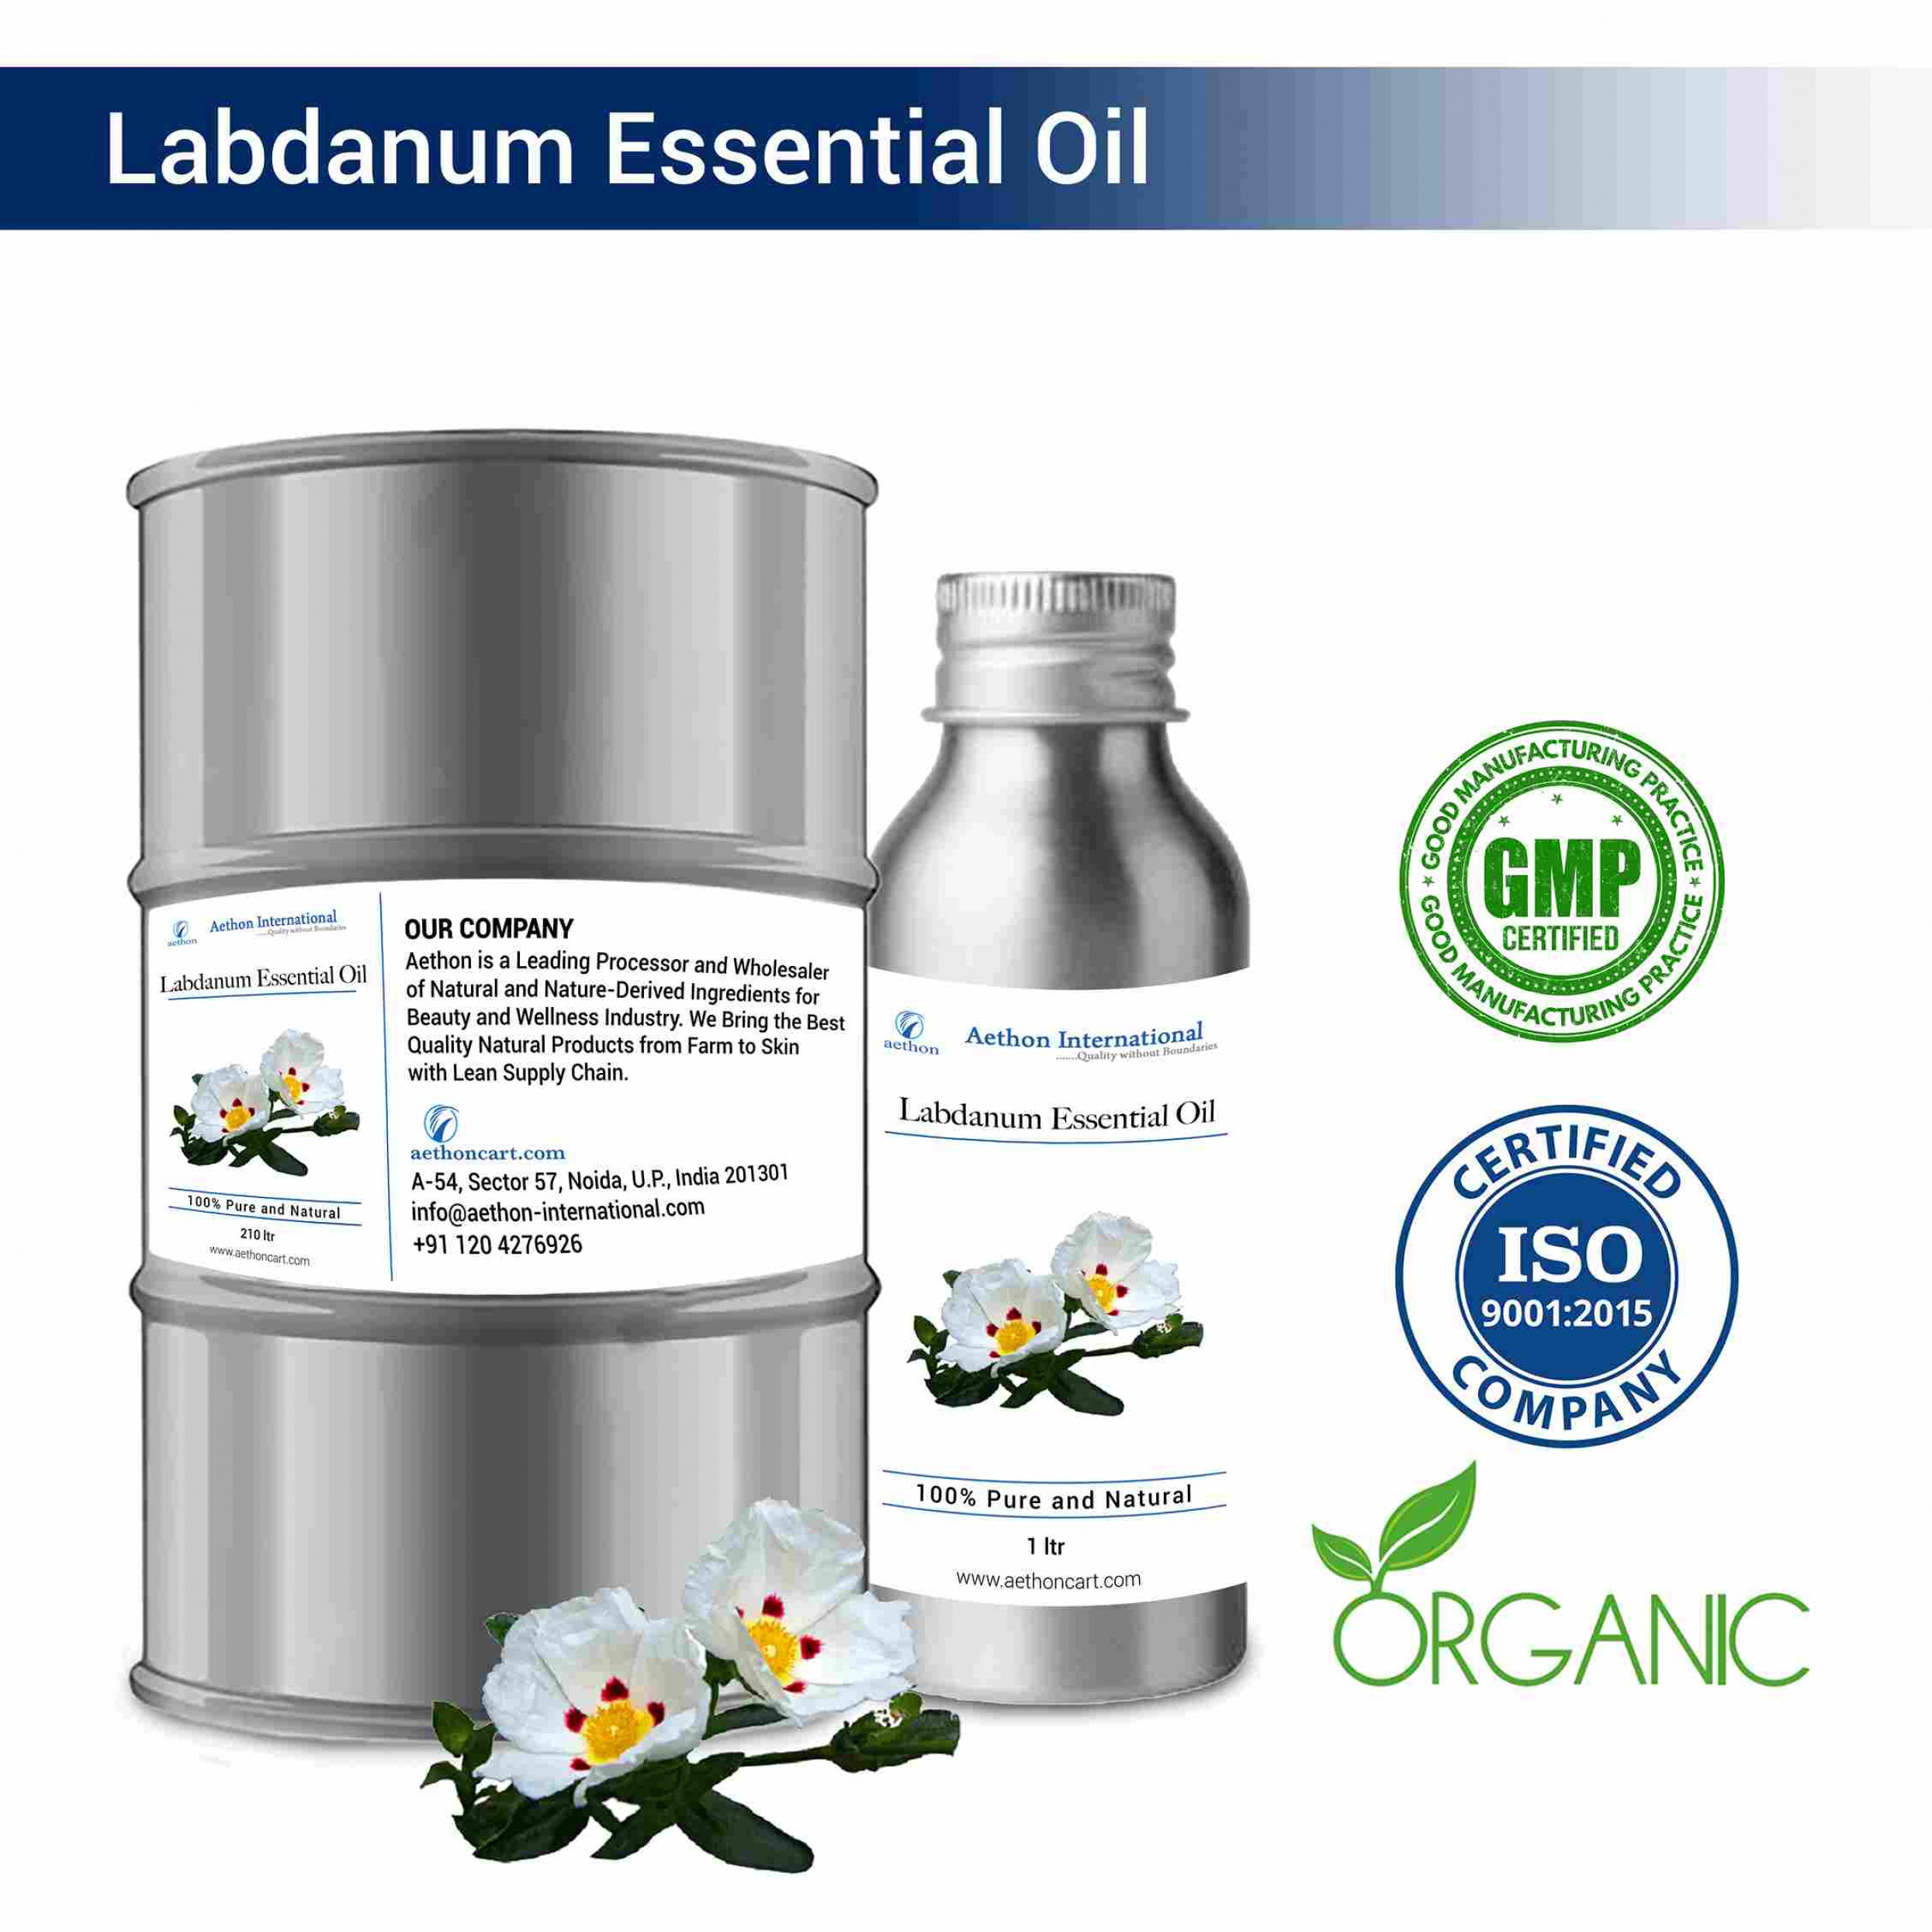 Labdanum Essential Oil